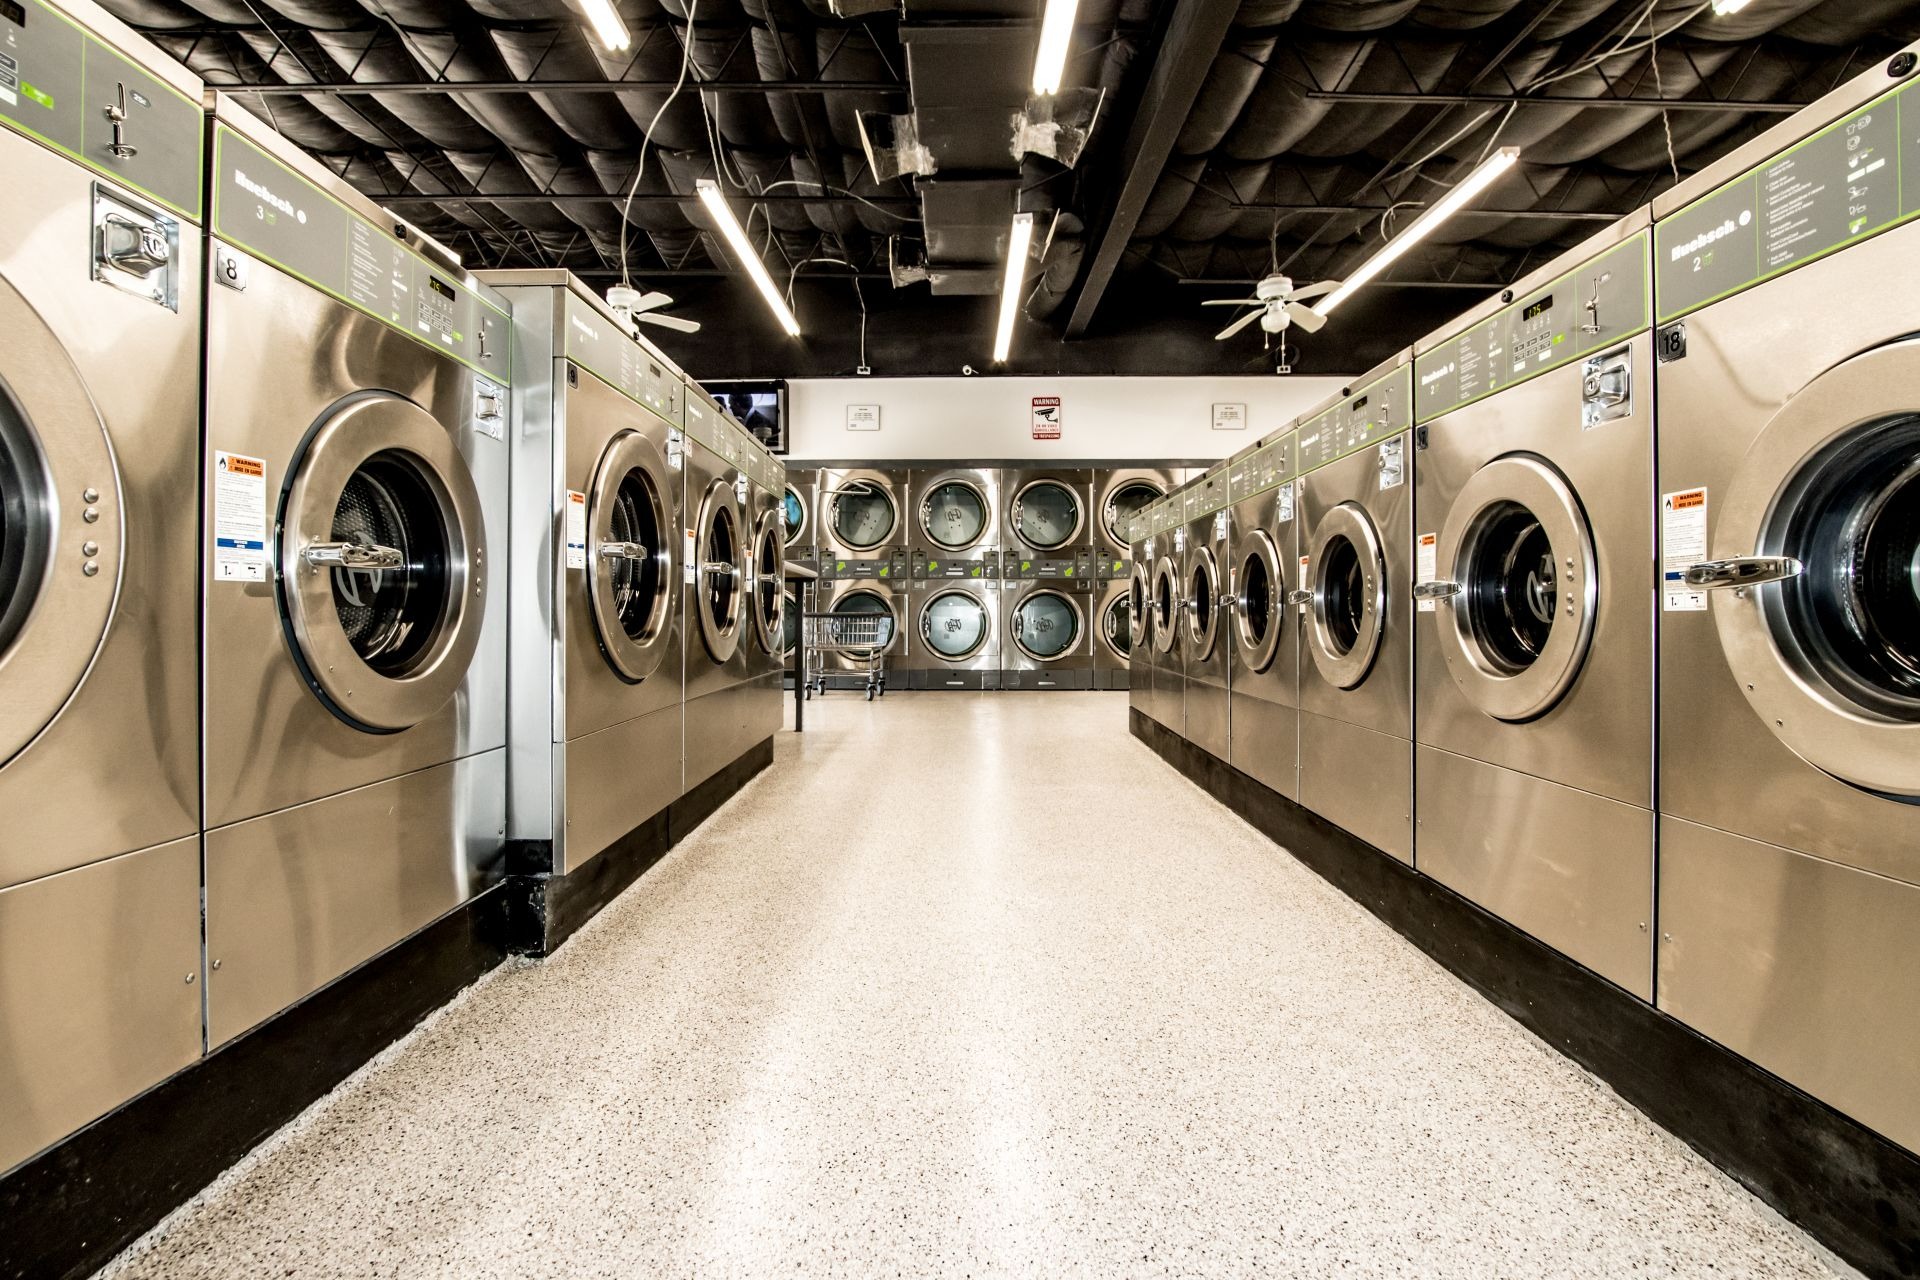 Hành trình đi lên từ con số 0 của doanh nghiệp kinh doanh giặt là trị giá triệu USD - Ảnh 2.